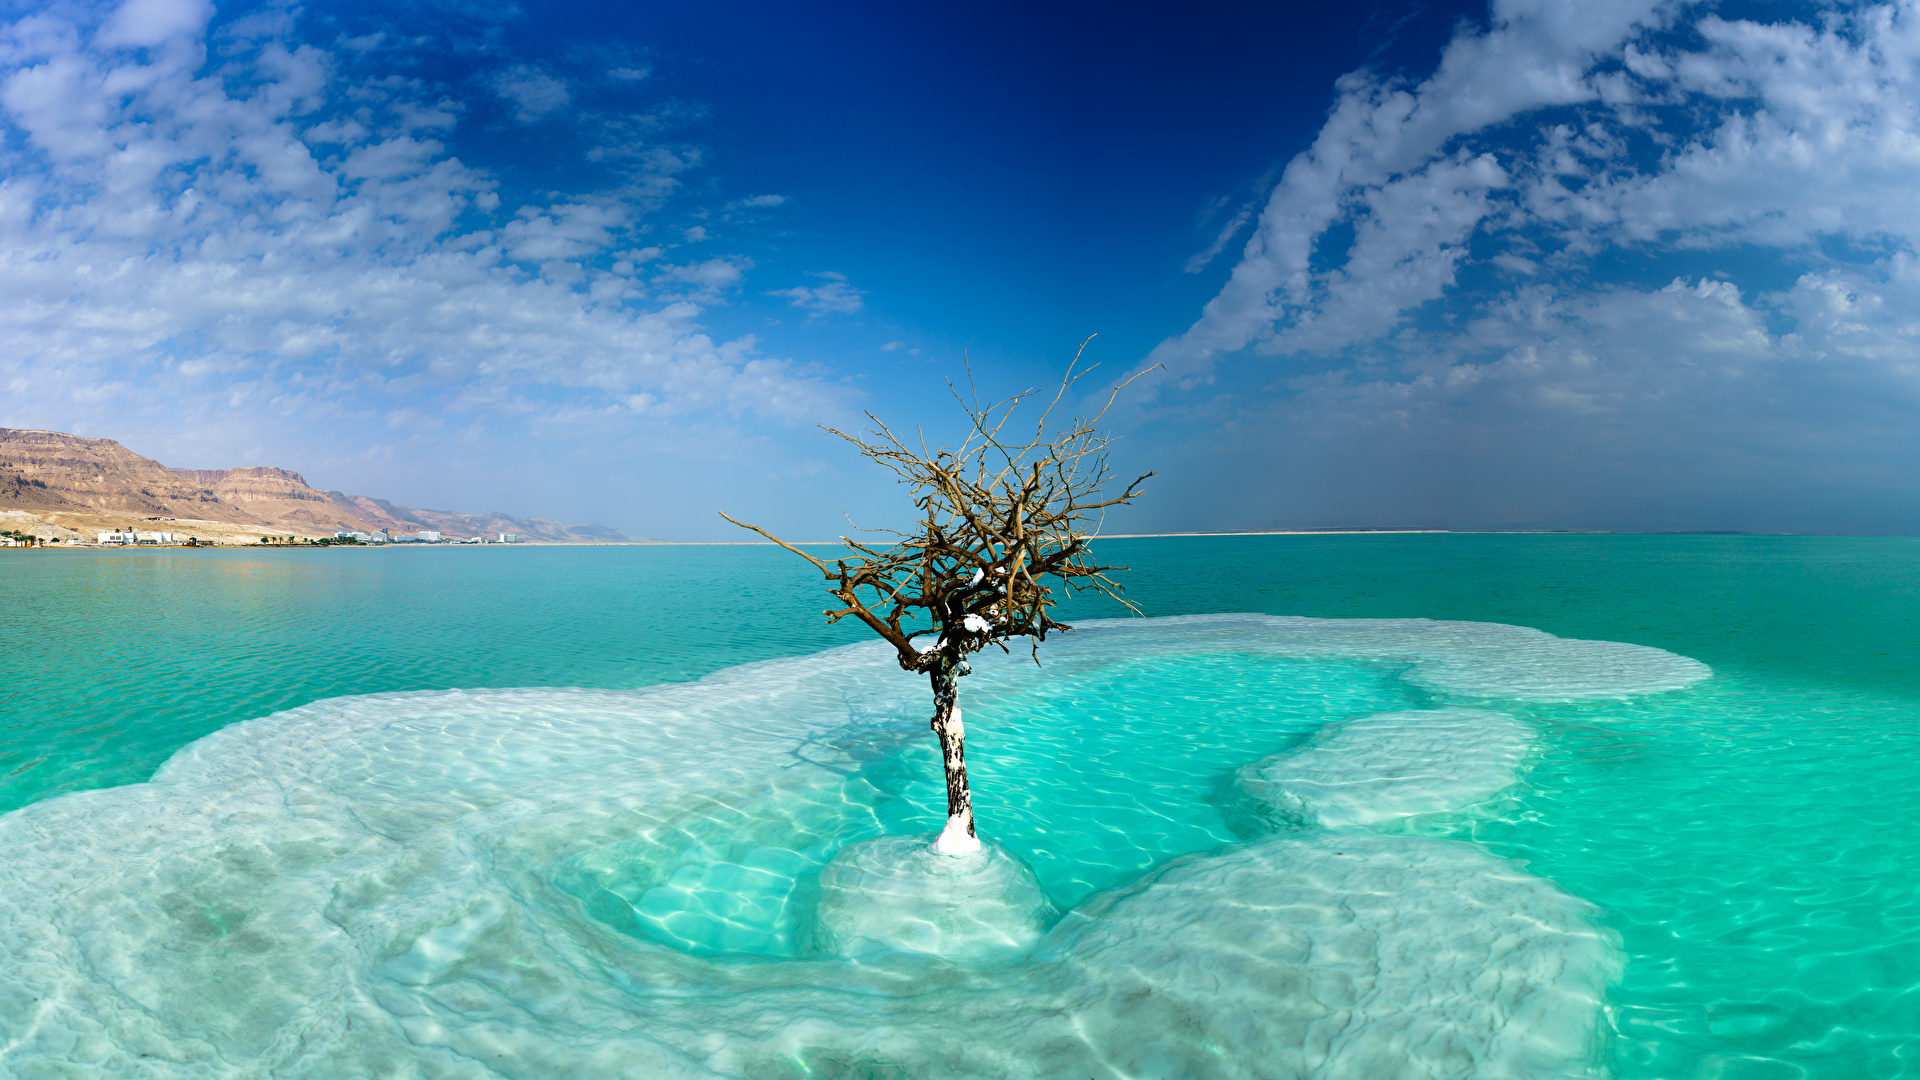 壁紙 19x1080 イスラエル 海 空 Dead Sea Neve Zohar 木 雲 自然 ダウンロード 写真